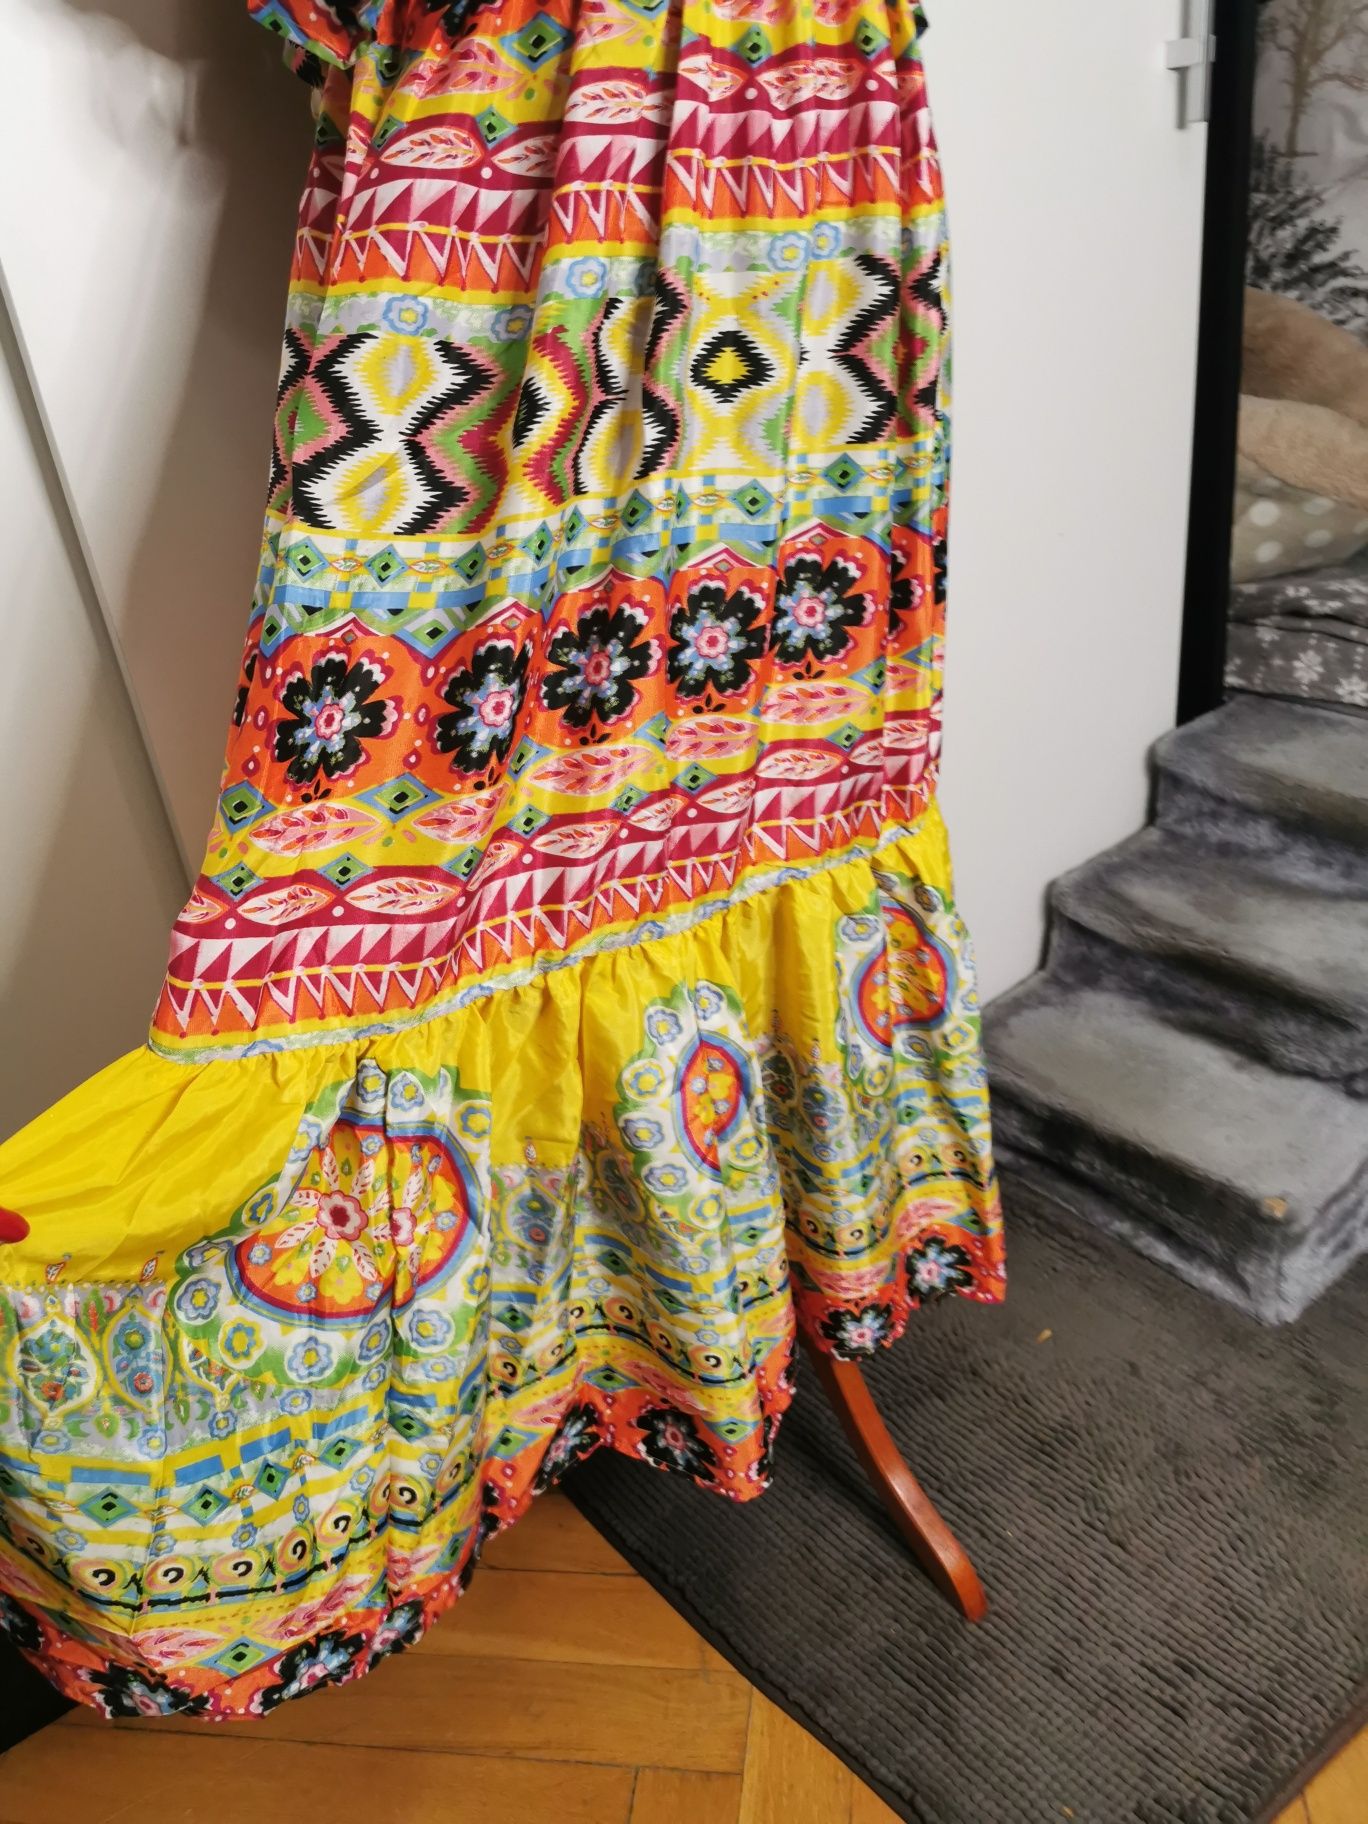 Śliczna jedwabna kolorowa sukienka indyjska na ramiączka jak hiszpanka